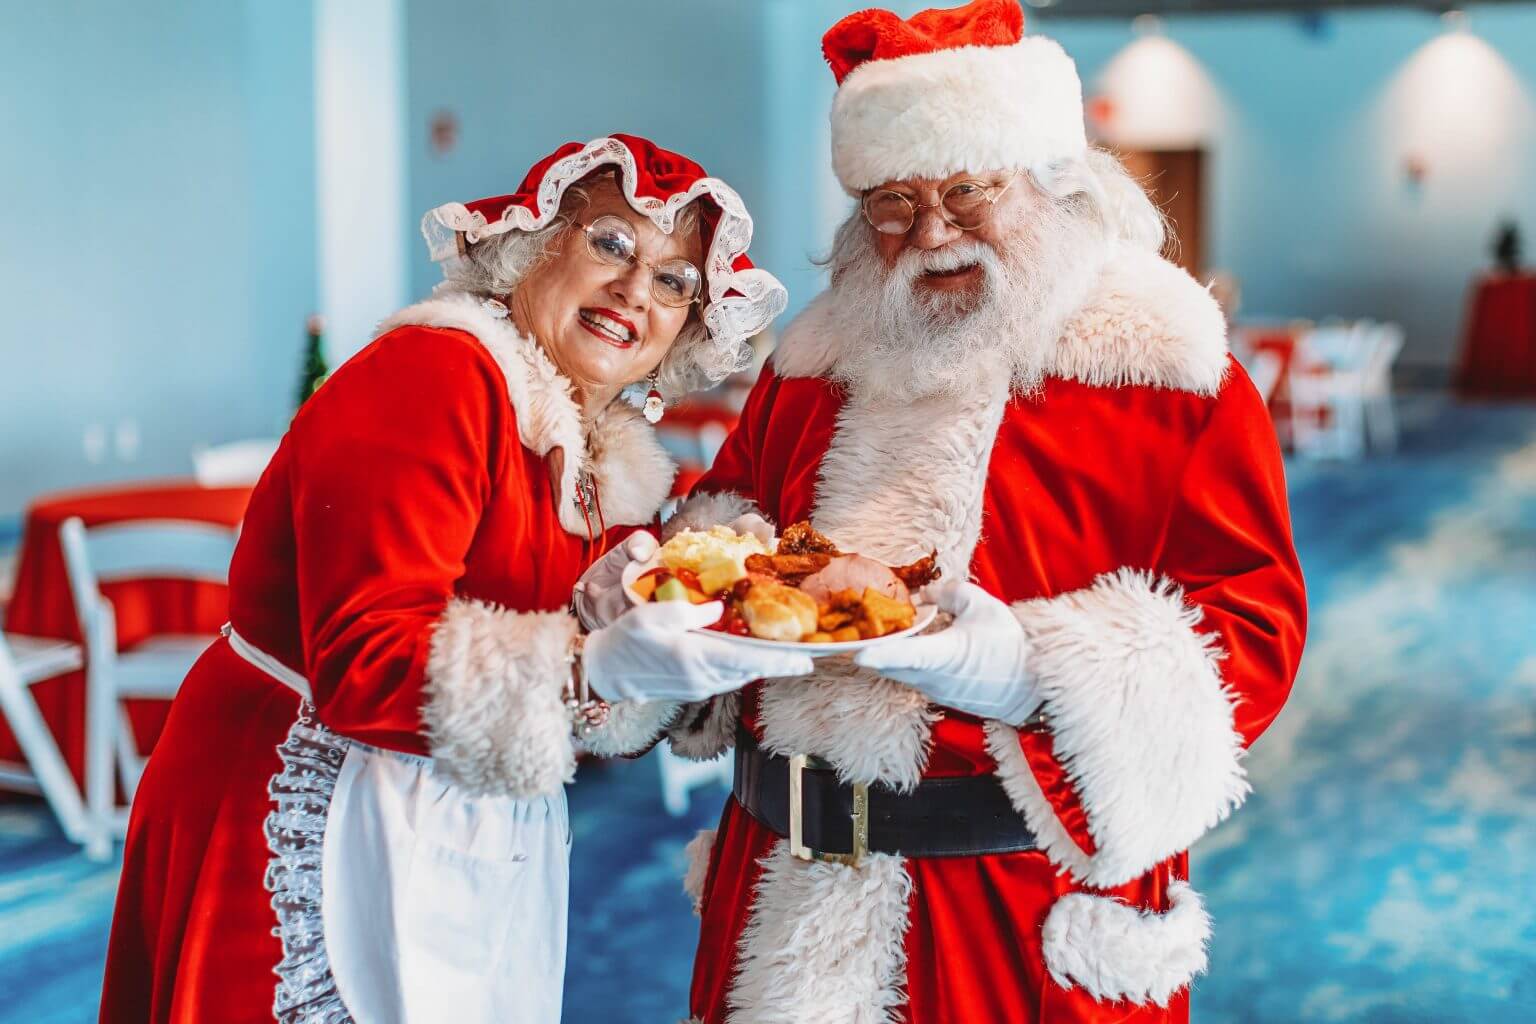 Santa and Mrs claus at breakfast with santa